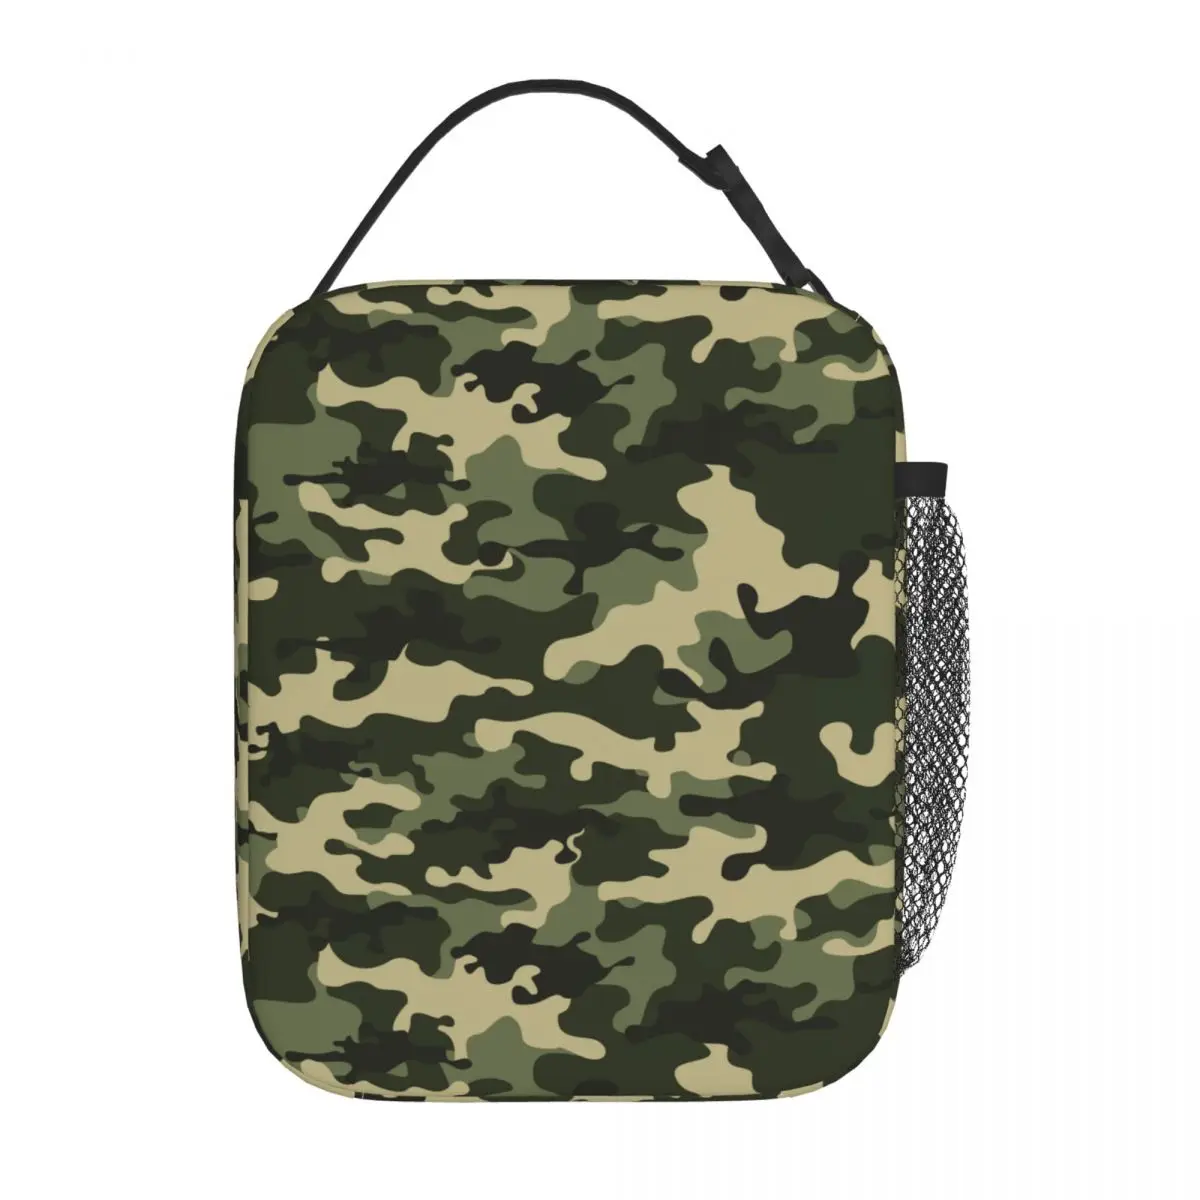 Зеленая камуфляжная сумка для ланча с изоляцией из военного камуфляжа Коробка для хранения продуктов Портативный термоохладитель Ланч-бокс для пикника